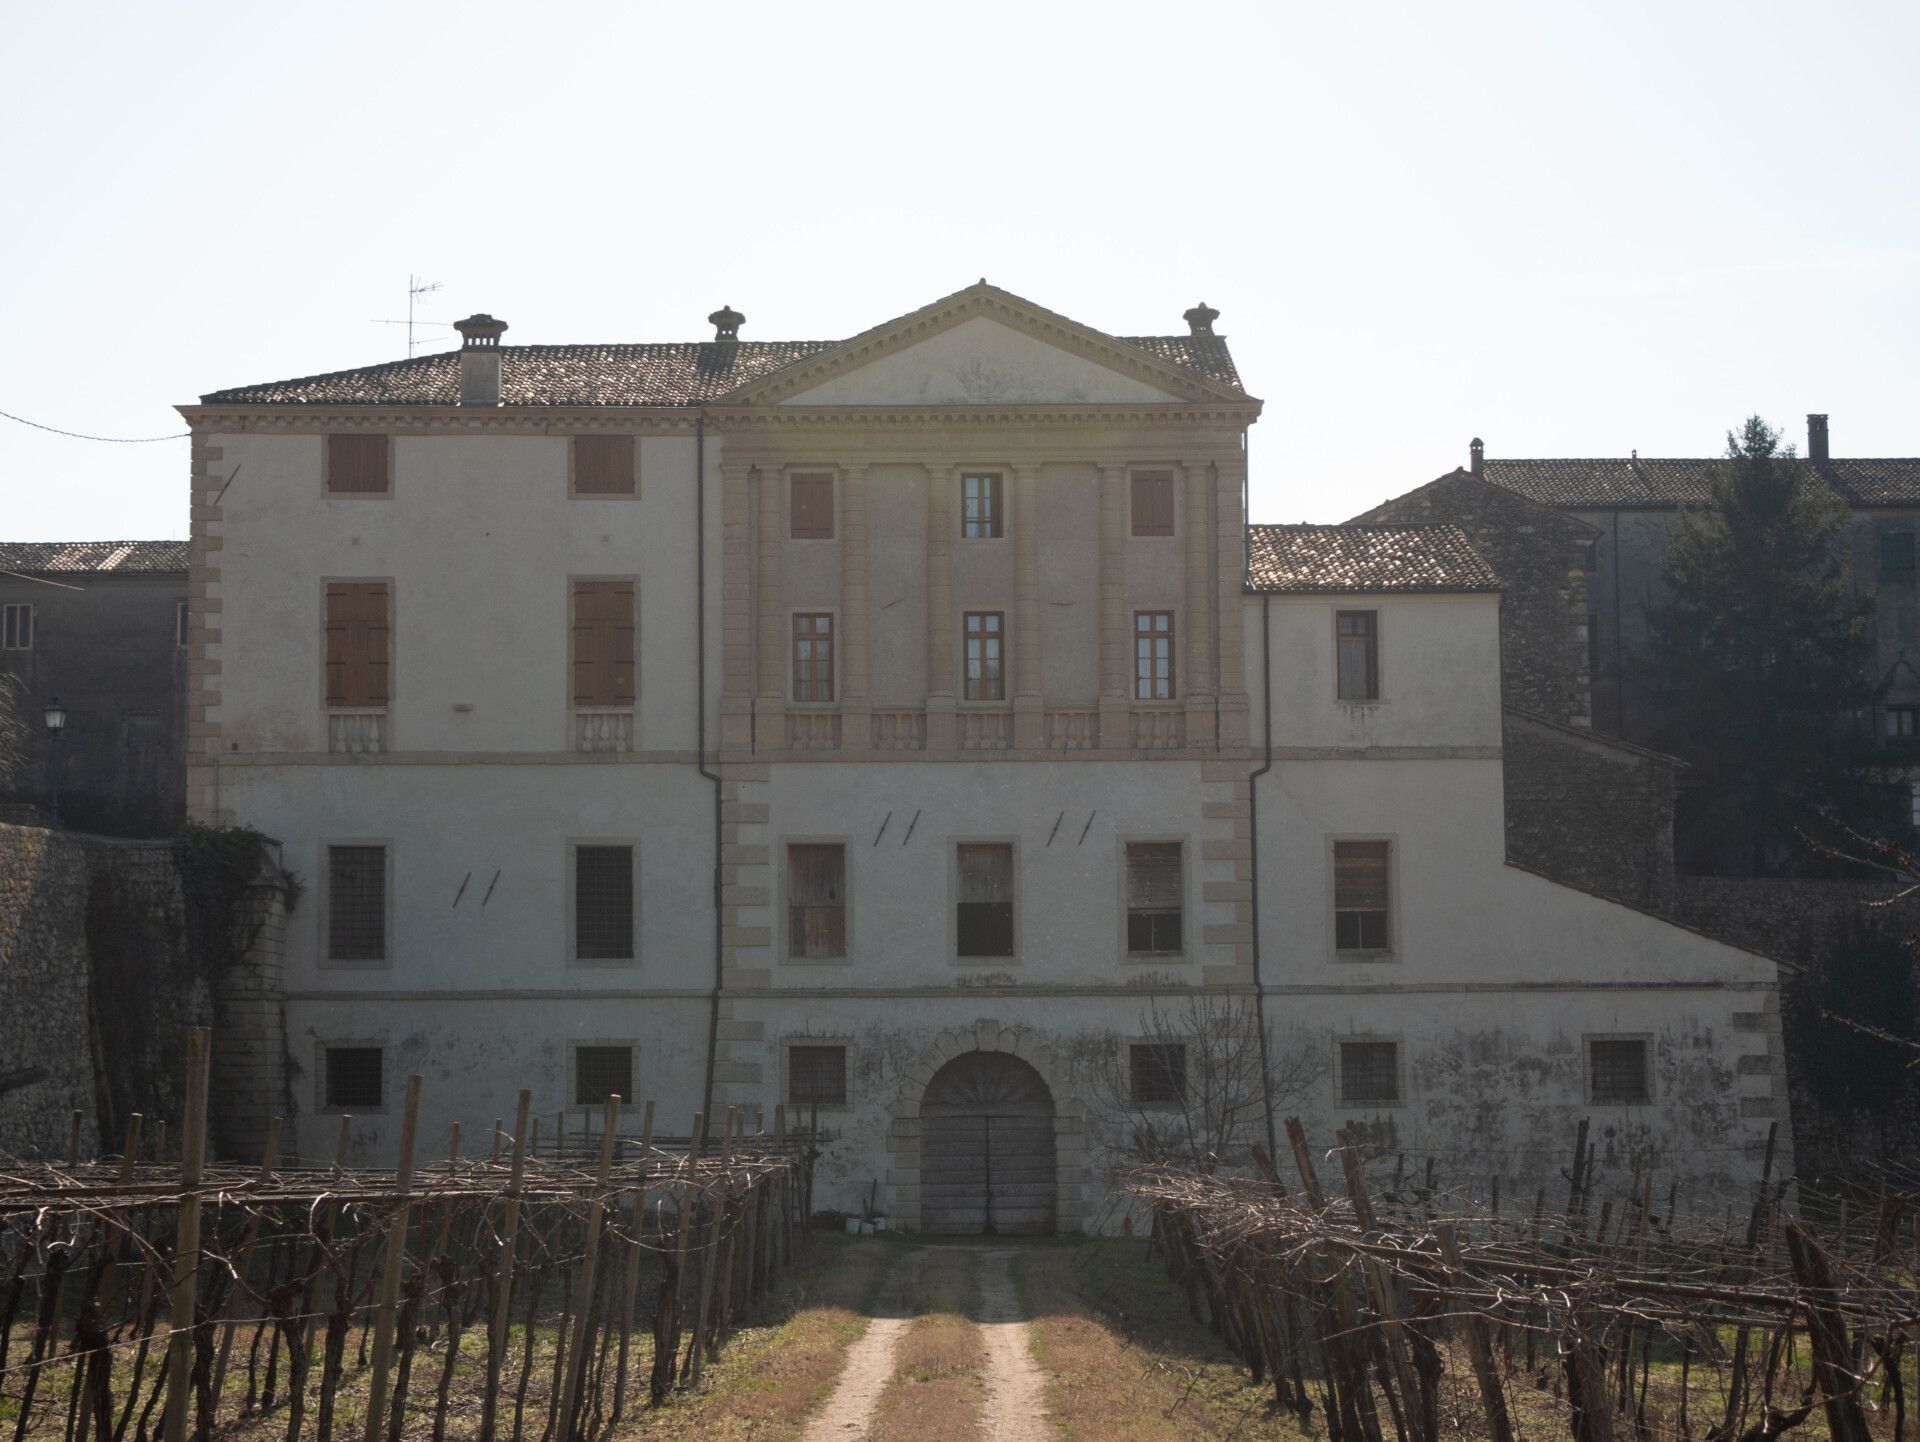 [3] Villa Dolfin Mistrorigo